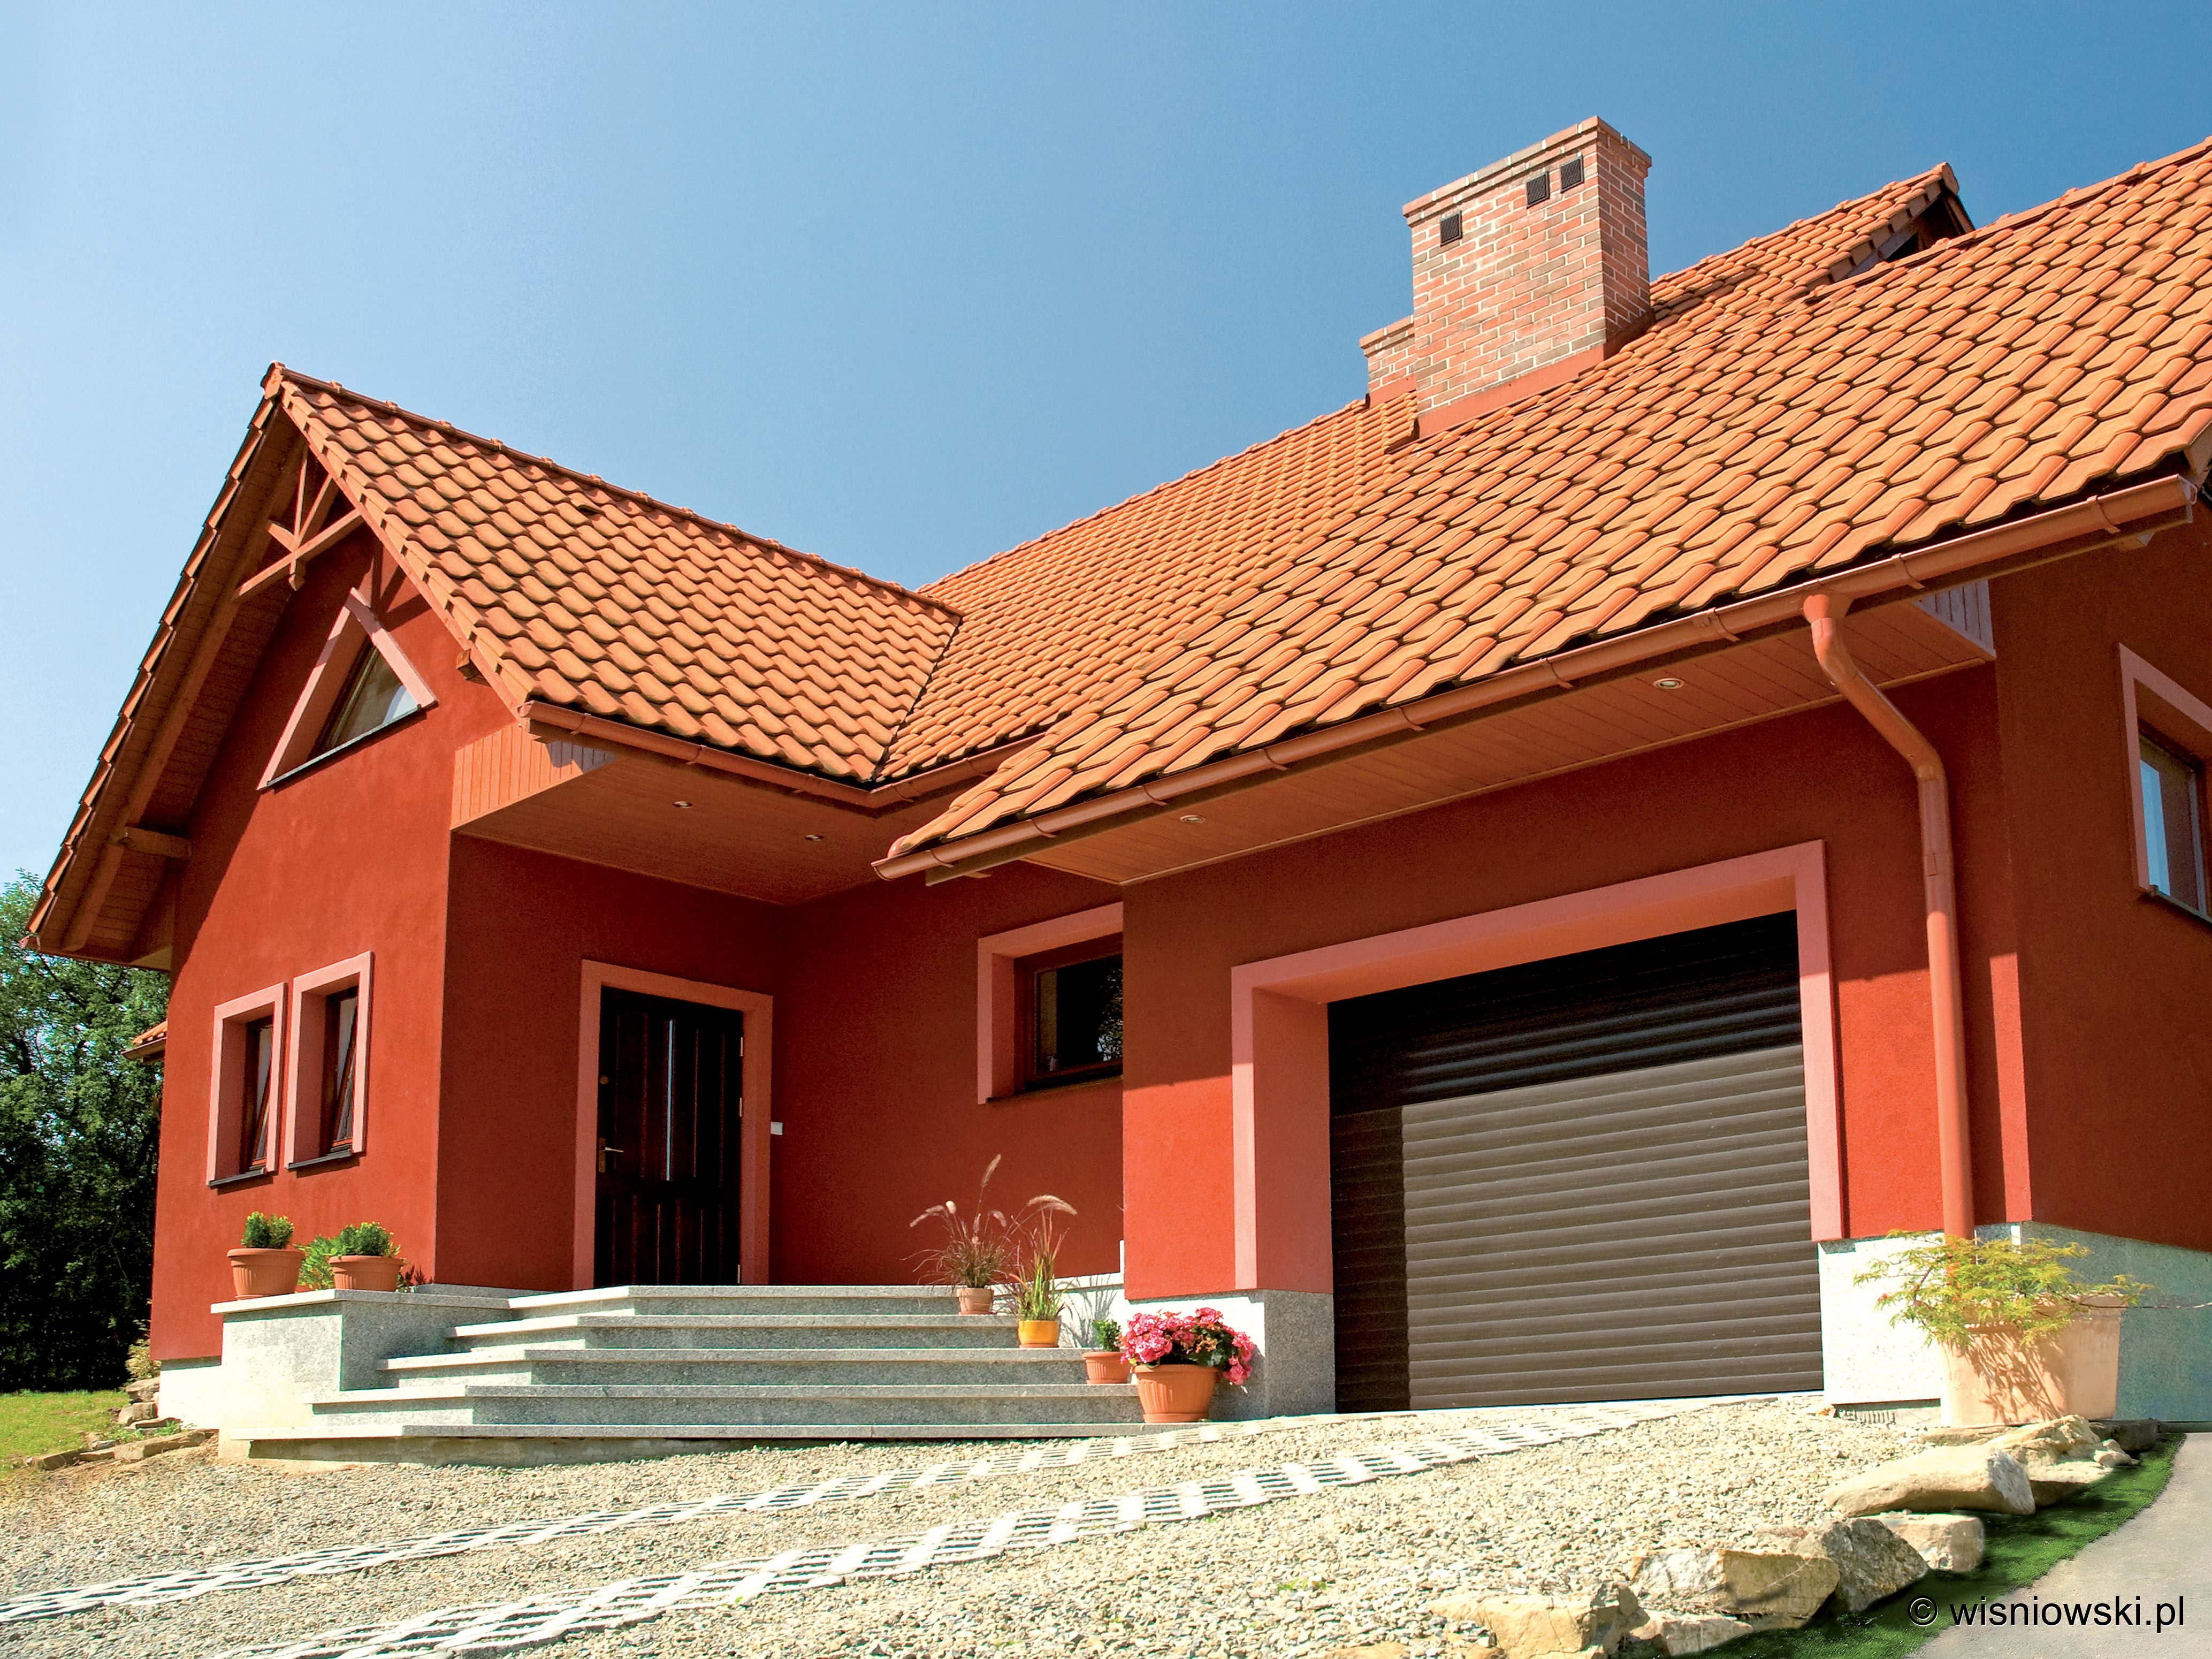 Дом квадратный крыша покраска. Черепица цвета терракота. Дома с терракотовой крышей. Оранжевый дом с коричневой крышей. Оранжевые фасады домов.